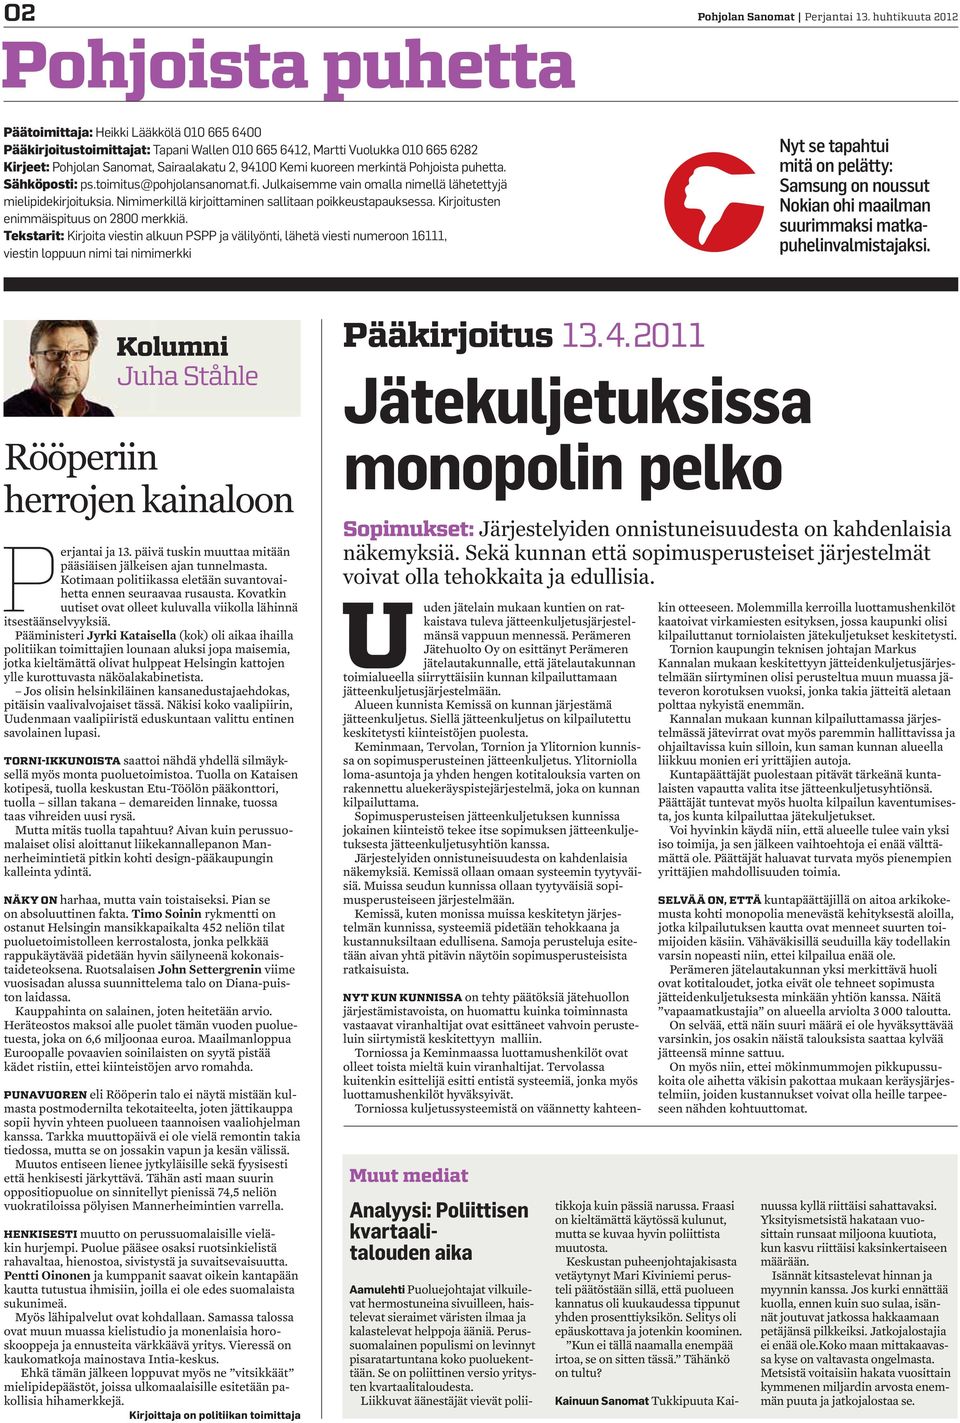 Pohjoista puhetta. Sähköposti: ps.toimitus@pohjolansanomat.fi. Julkaisemme vain omalla nimellä lähetettyjä mielipidekirjoituksia. Nimimerkillä kirjoittaminen sallitaan poikkeustapauksessa.